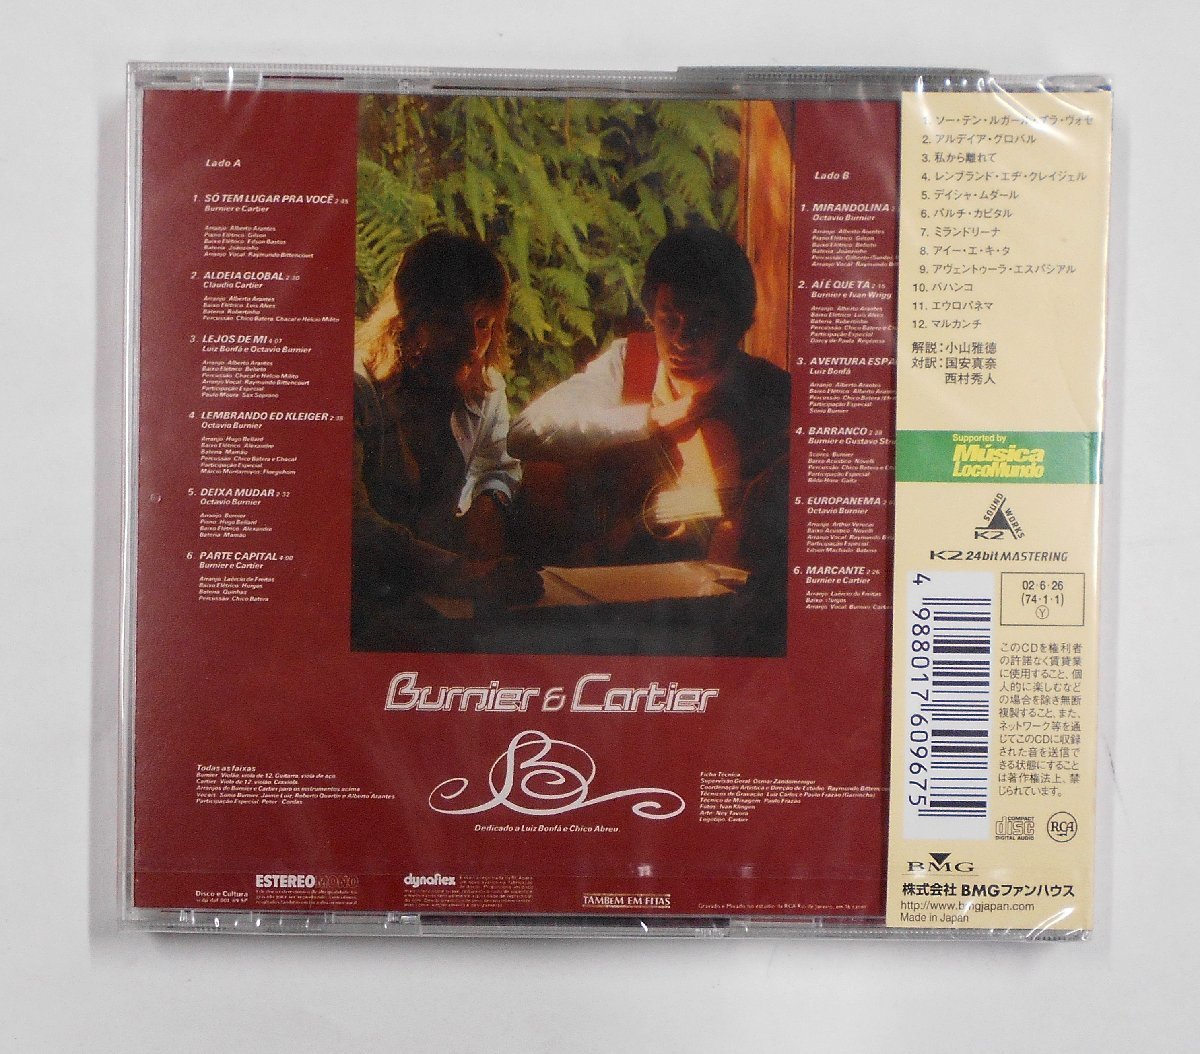 CD BURNIER & CARTIER ブルニエール & カルチエール 【ス261】_画像2